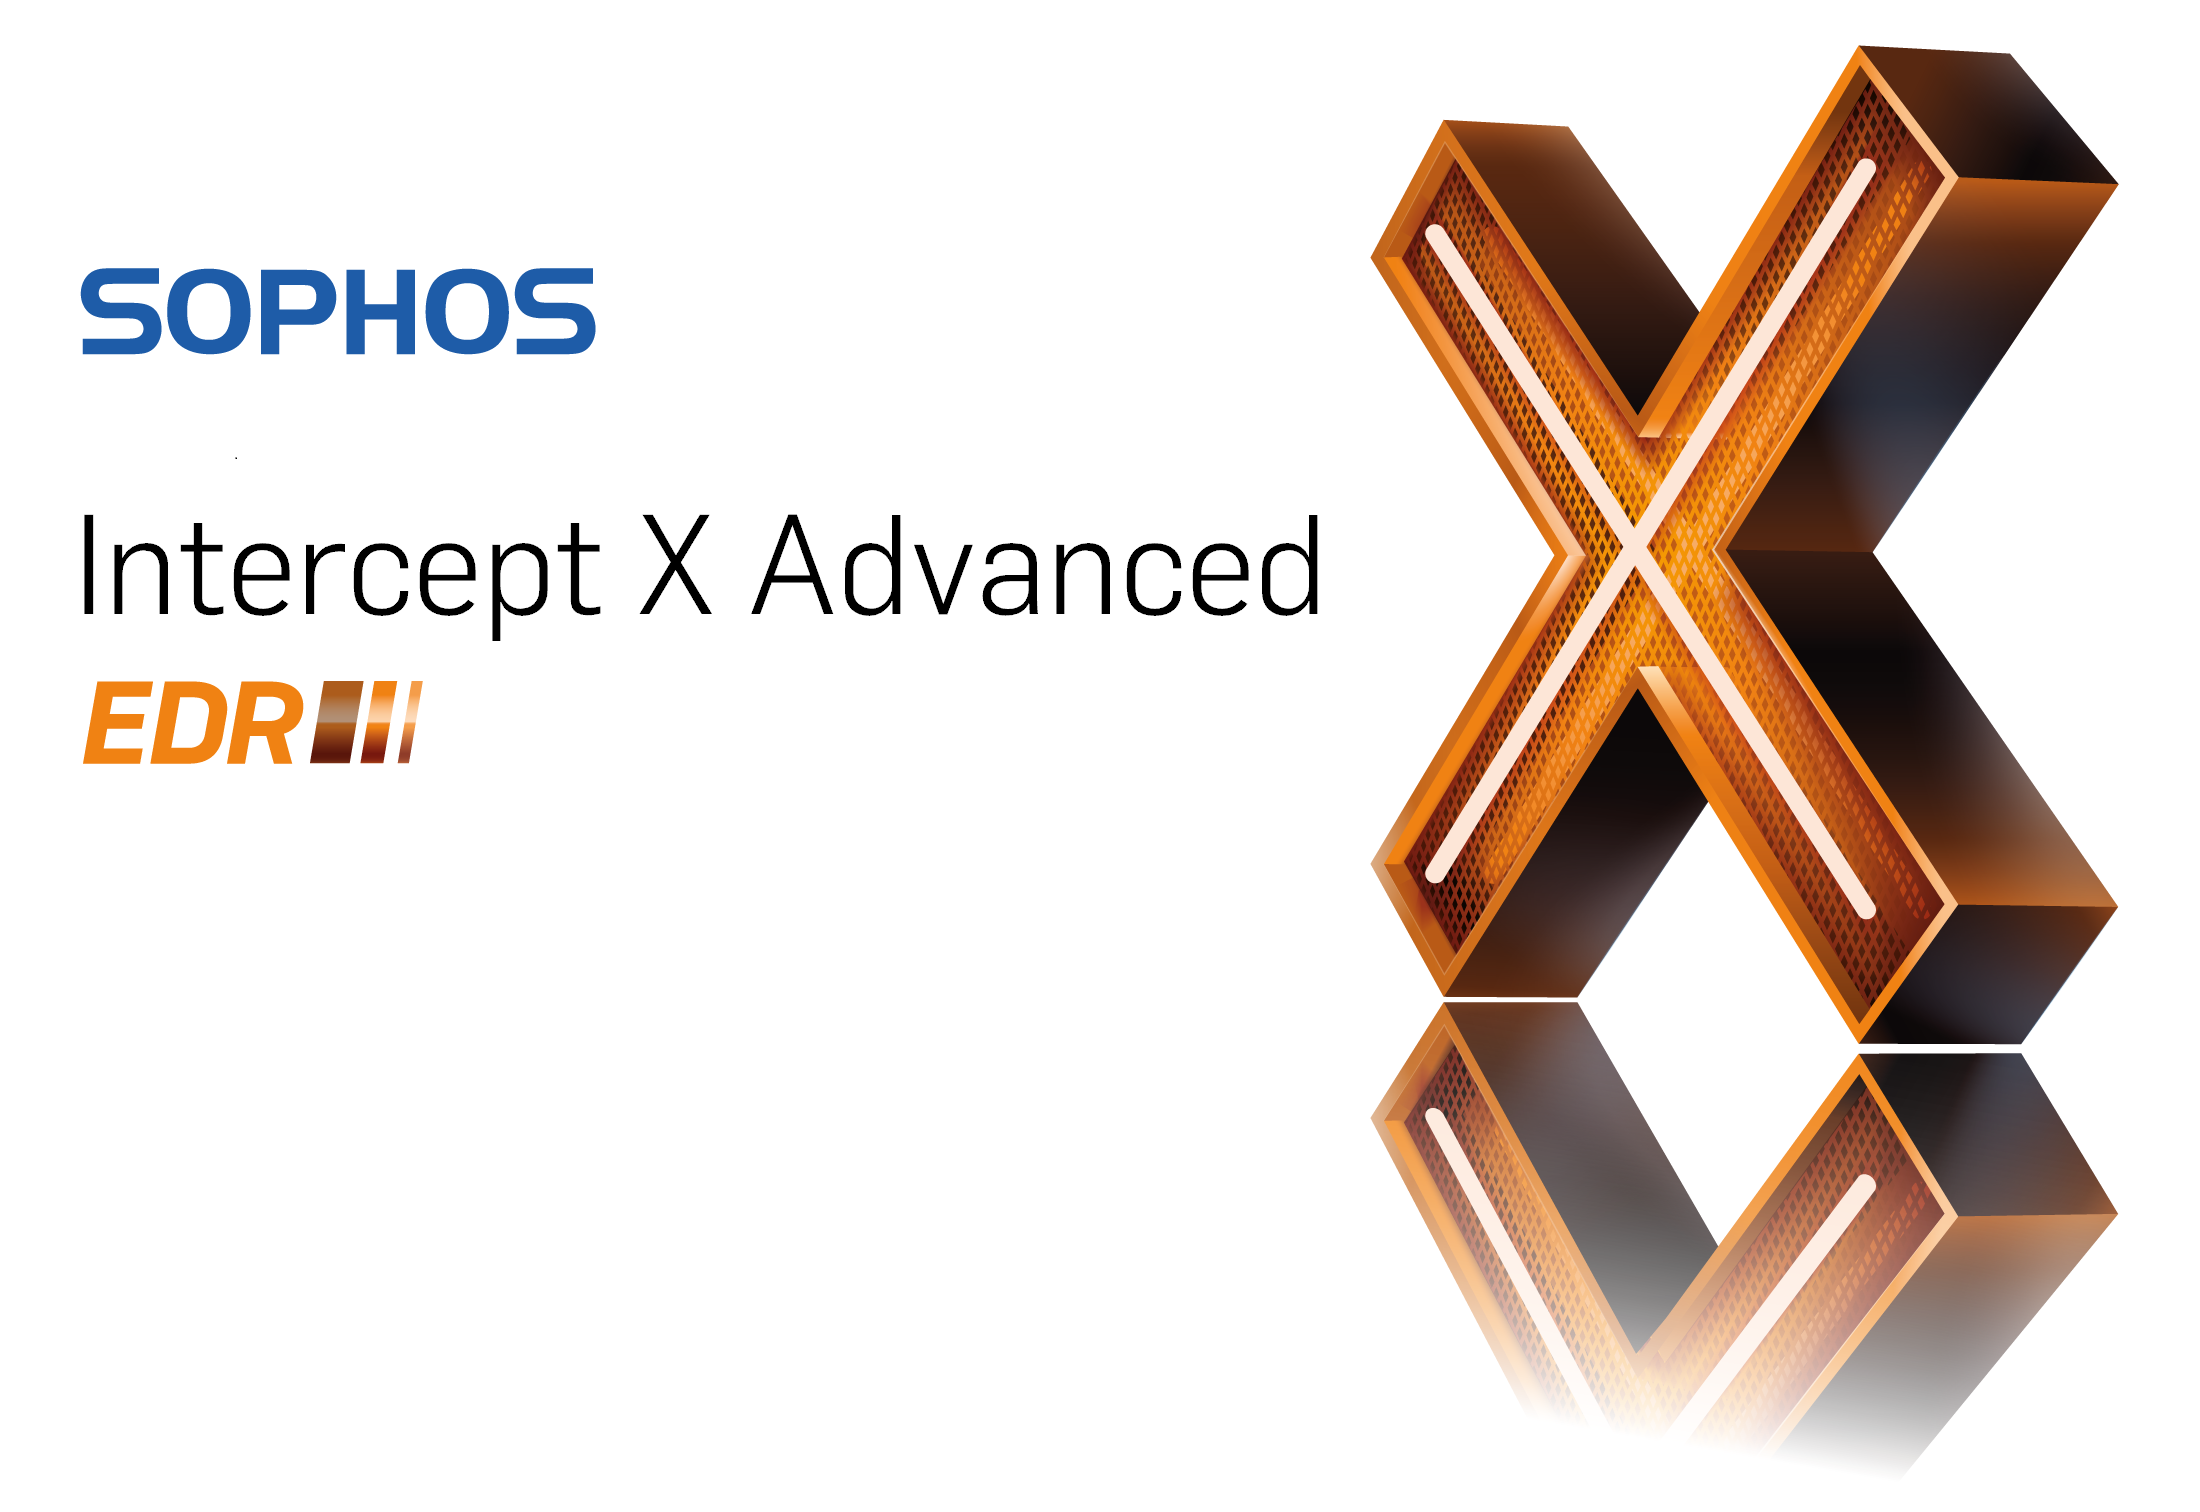 Sophos-Intercept X-EDR Logo.png